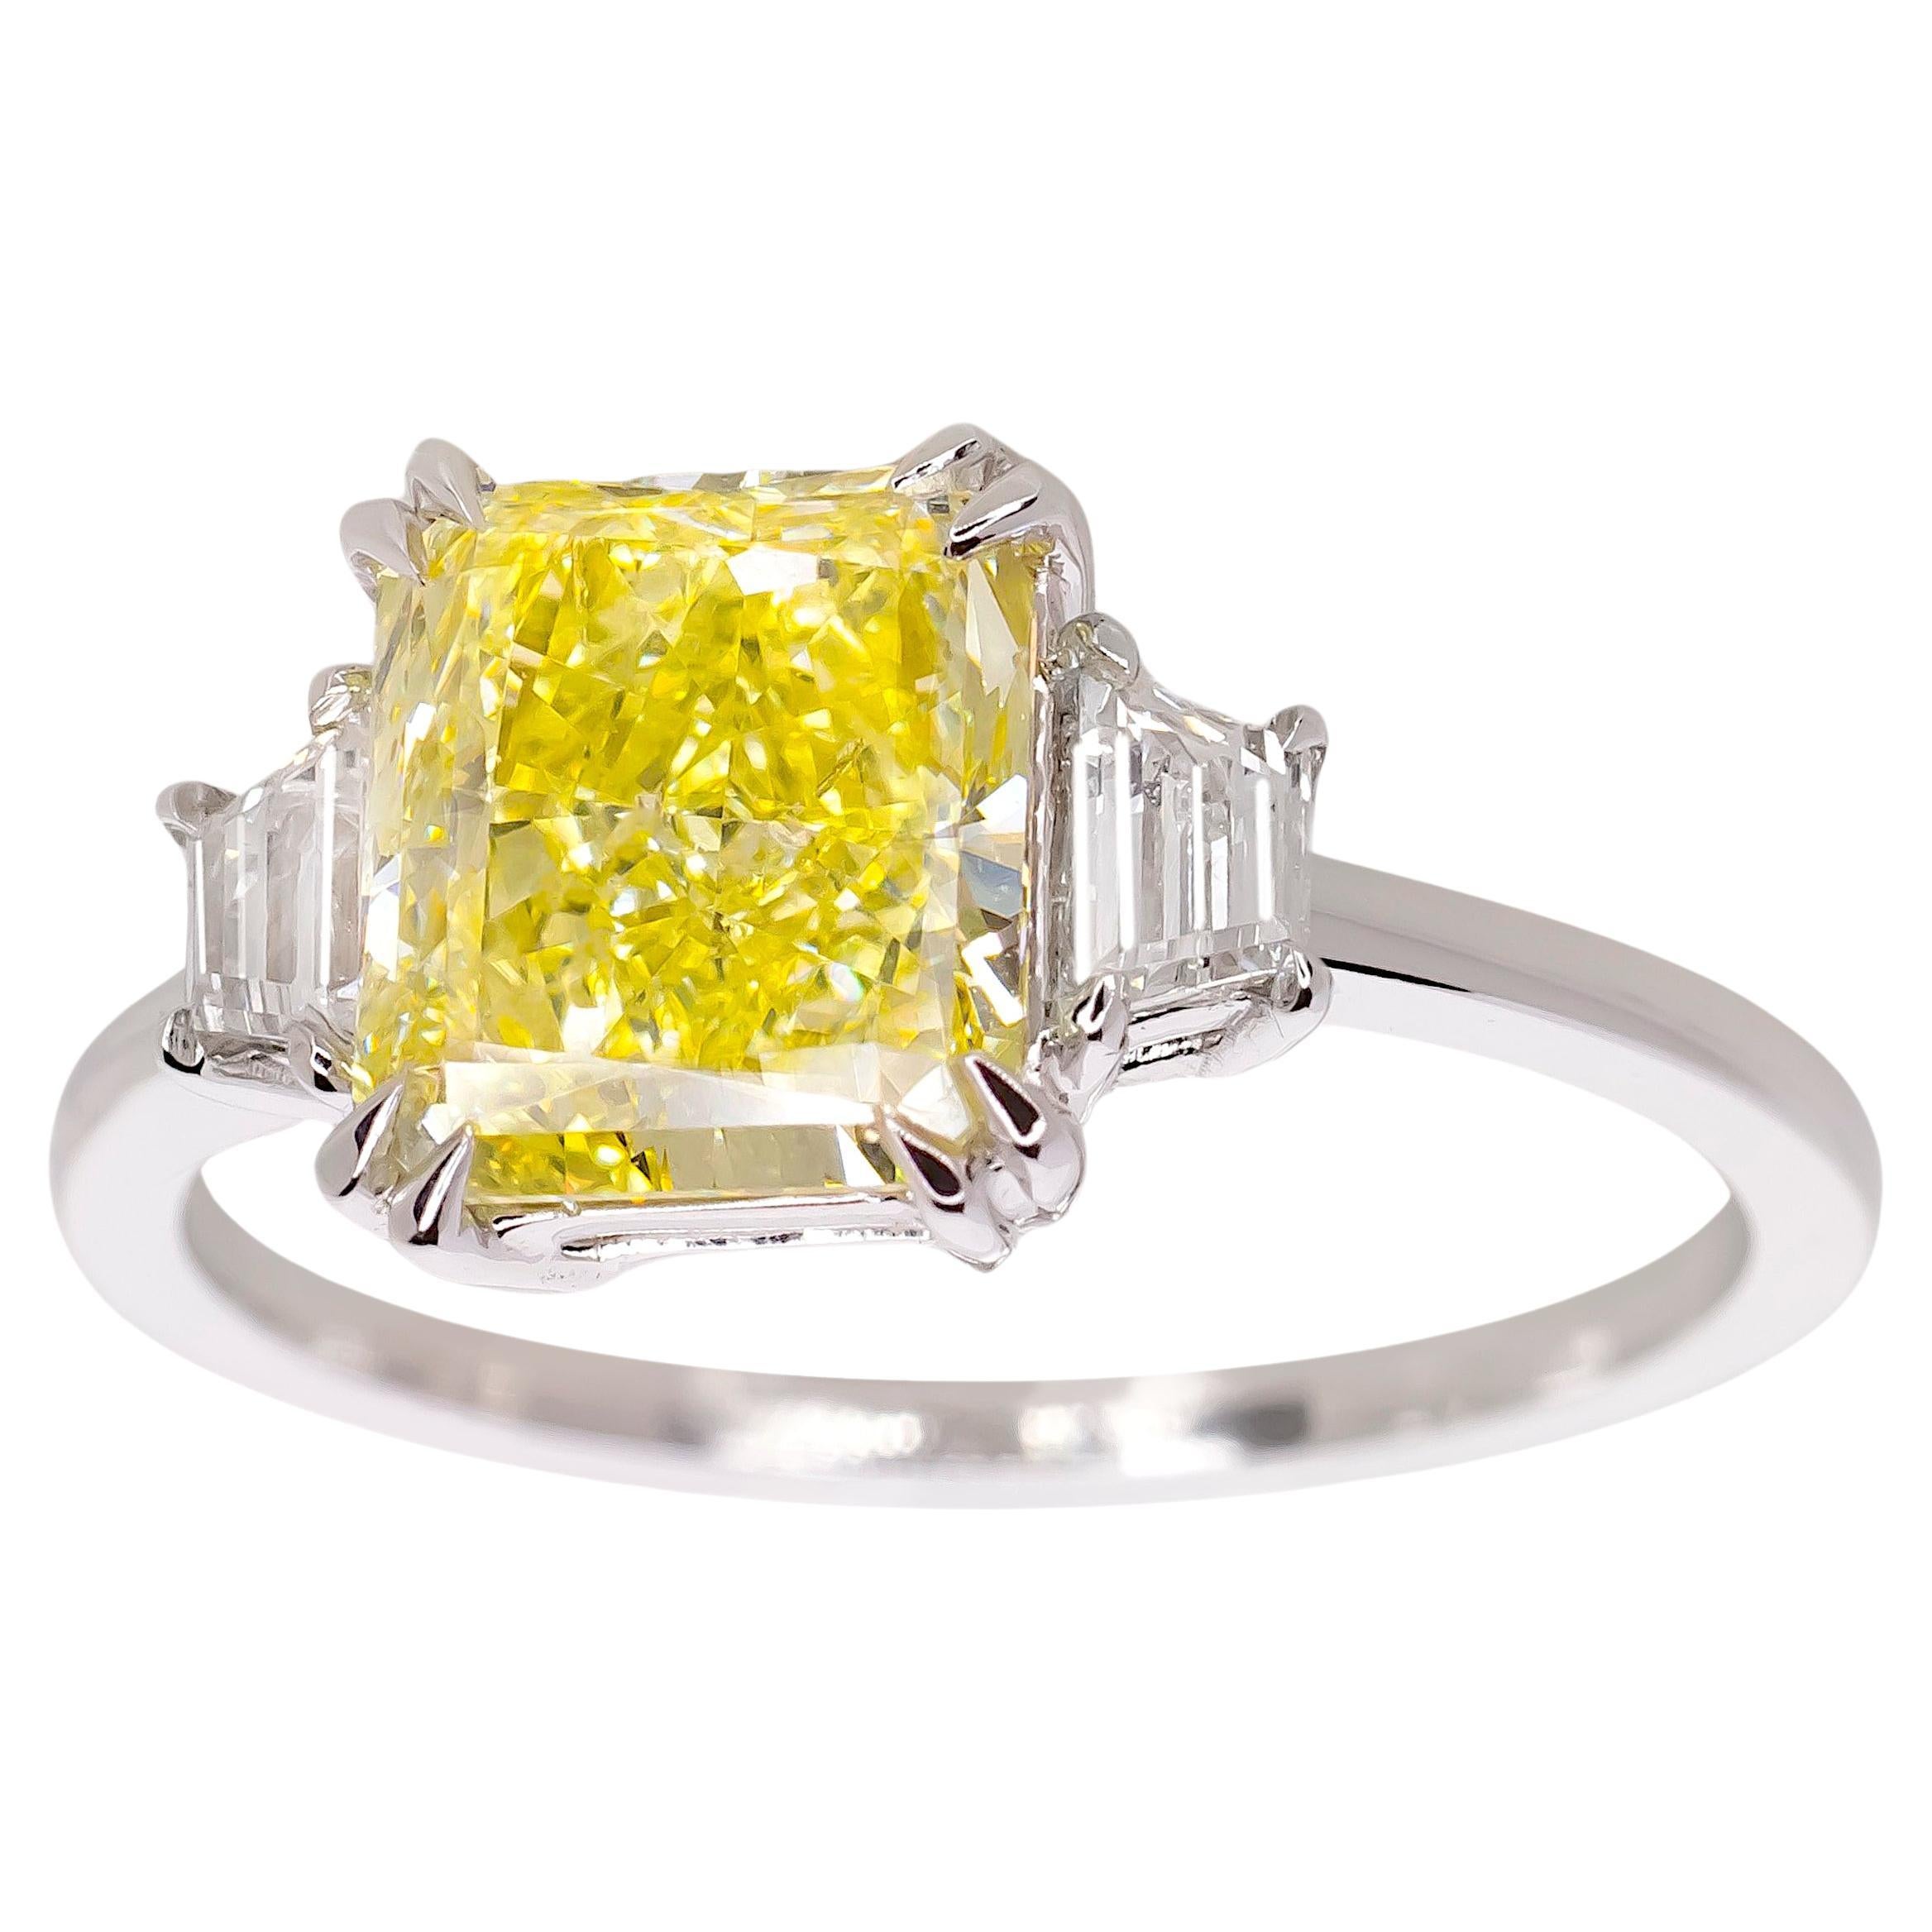 GIA-zertifizierter 1,38 Karat Fancy Gelber Diamantring aus 18 Karat Weißgold mit Strahlenschliff